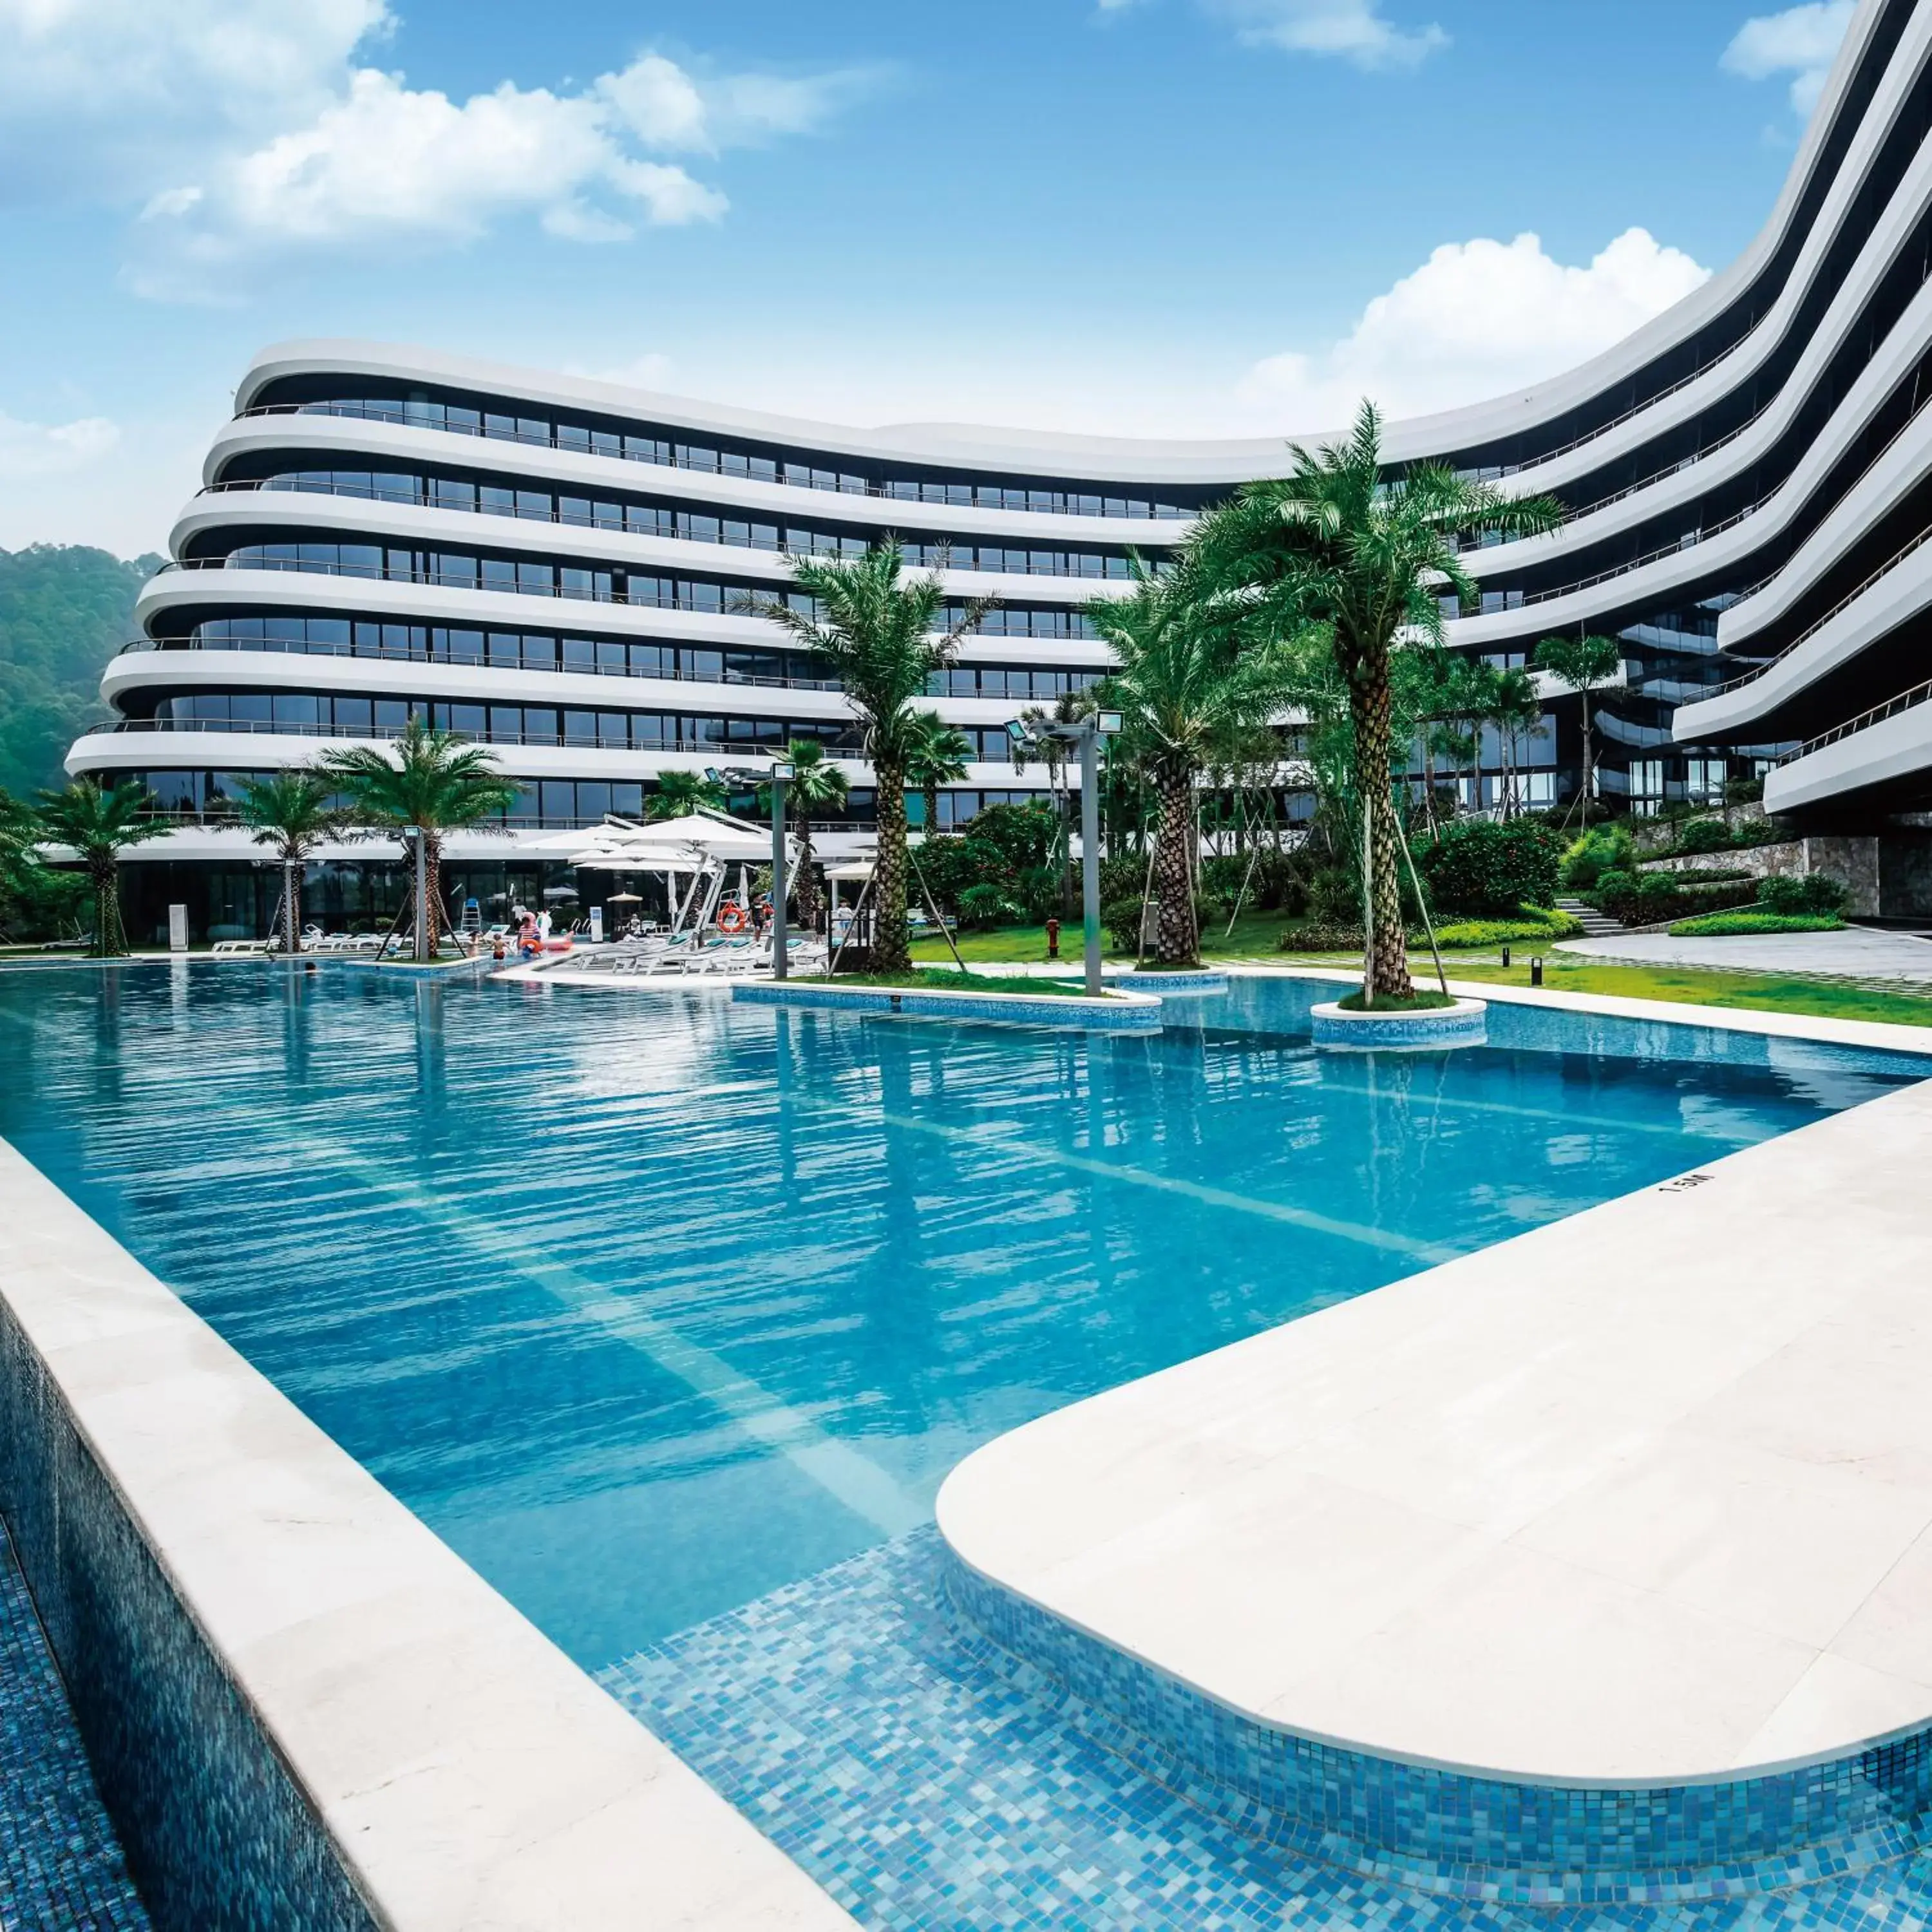 Swimming Pool in LN Garden Hotel Nansha Guangzhou